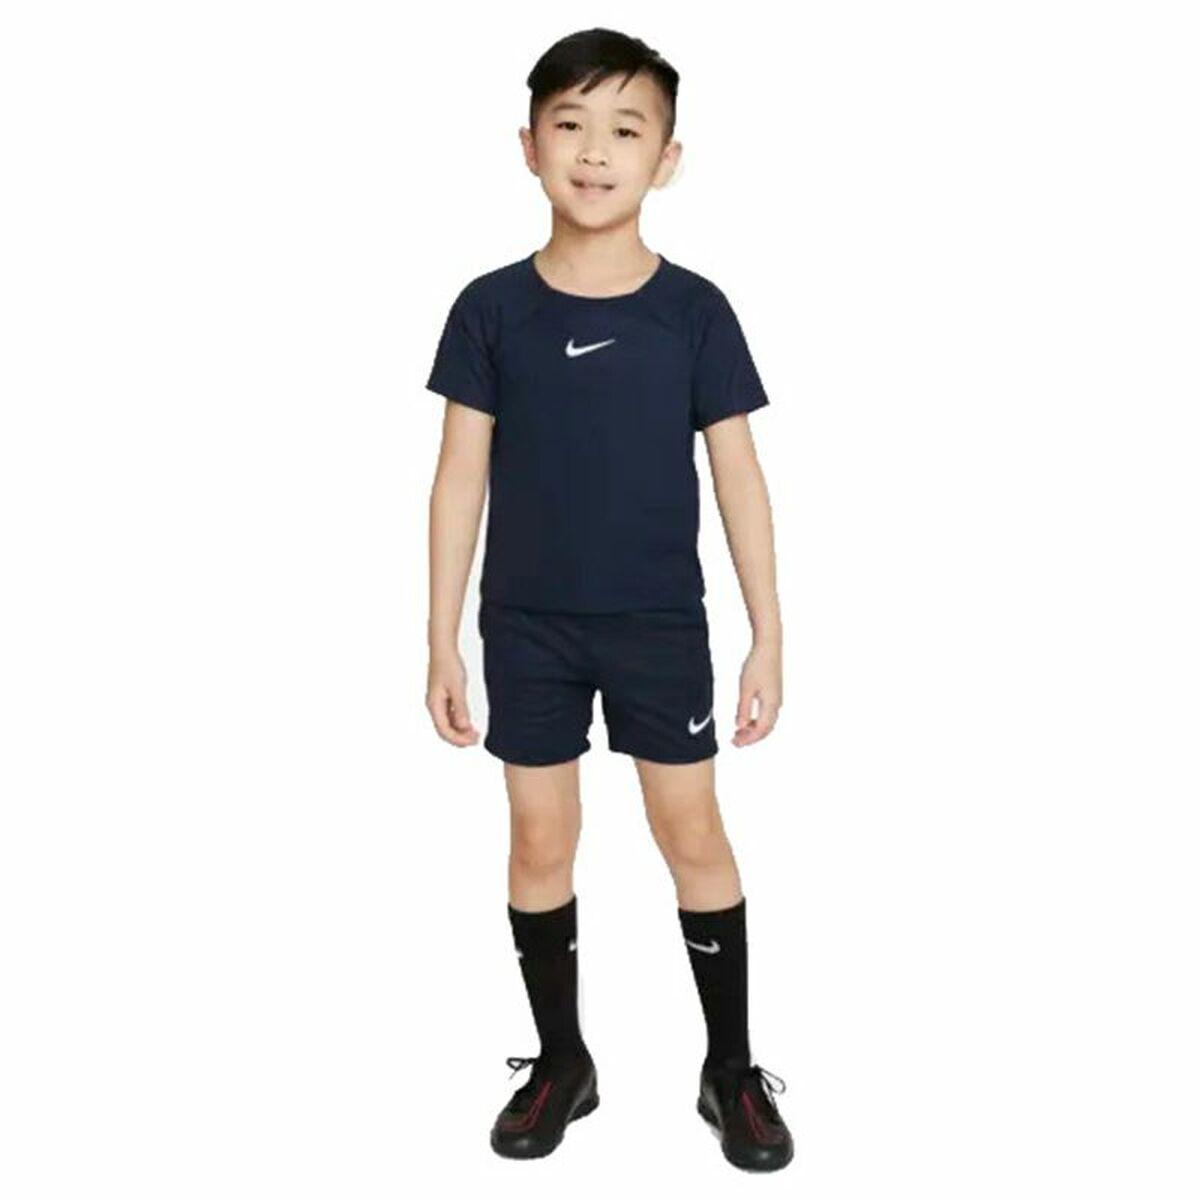 Køb Sportstøj til Børn Nike Dri-FIT Academy Pro S fra vivas.dk